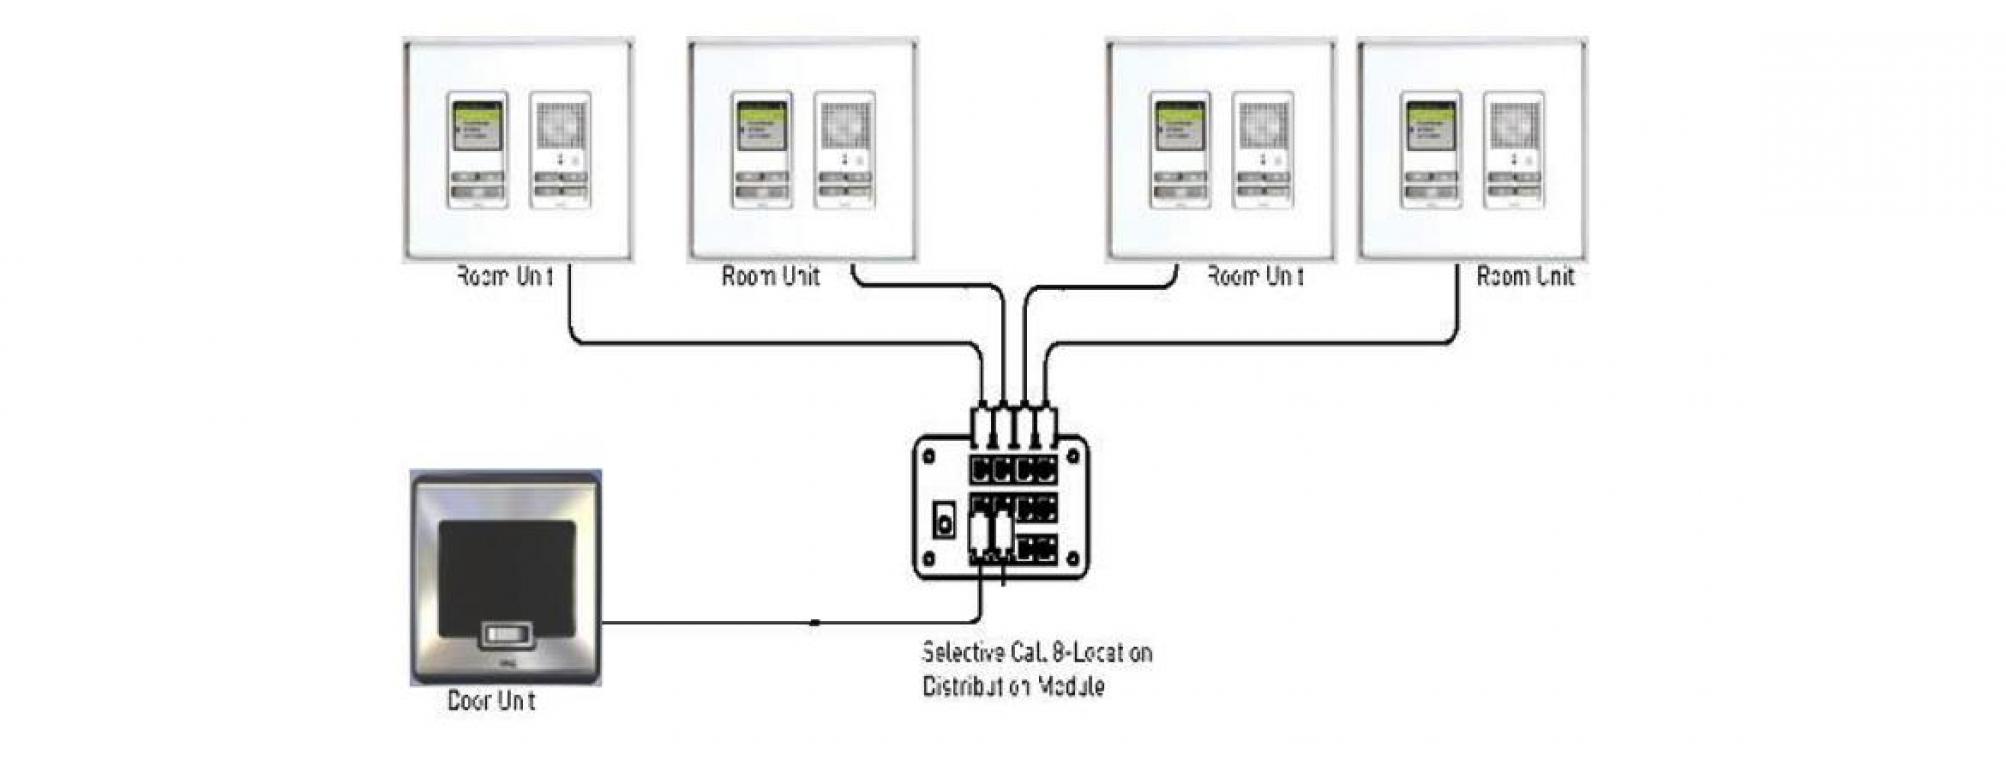 Intercom System Installation